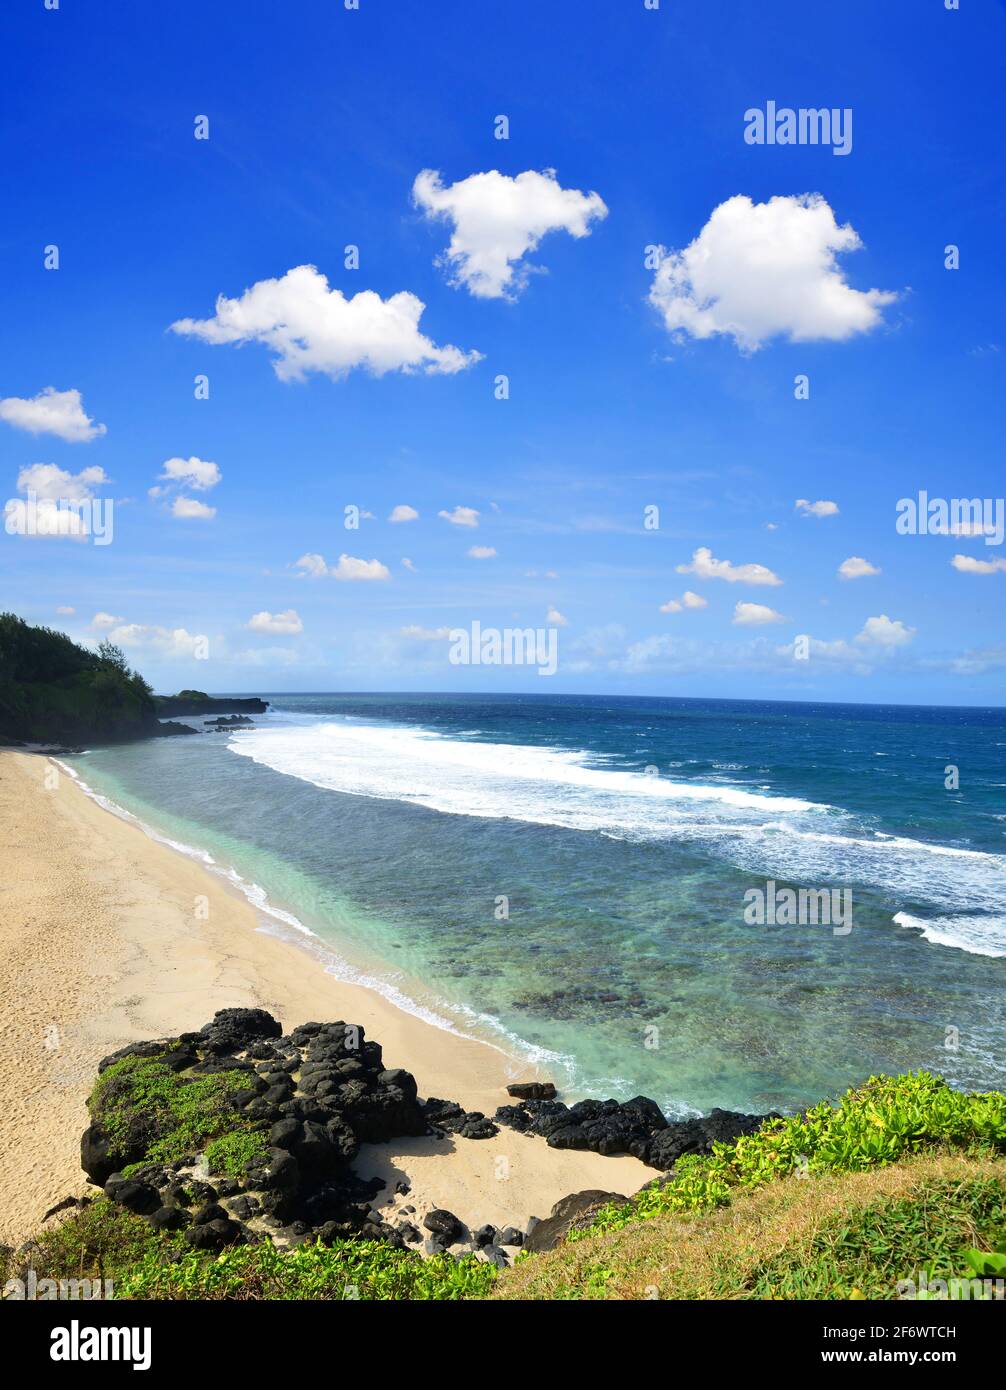 Vue sur la belle plage tropicale gris gris depuis la falaise de Souillac, au sud de l'île Maurice. Océan Indien. Banque D'Images